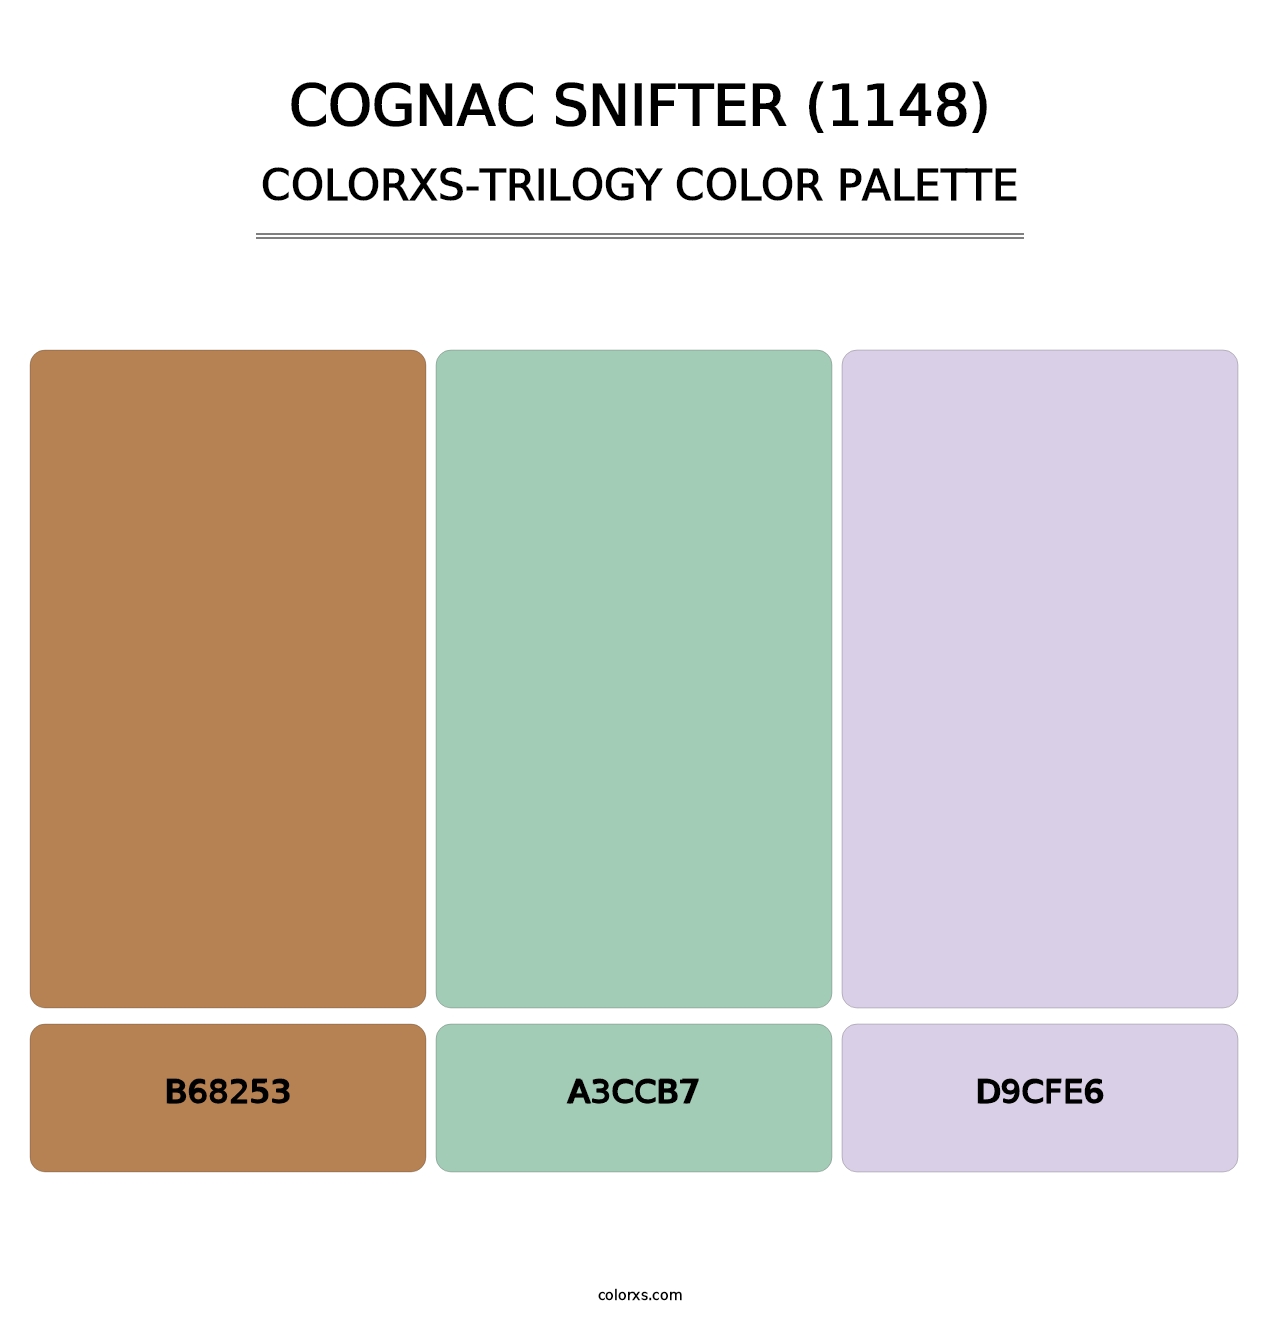 Cognac Snifter (1148) - Colorxs Trilogy Palette